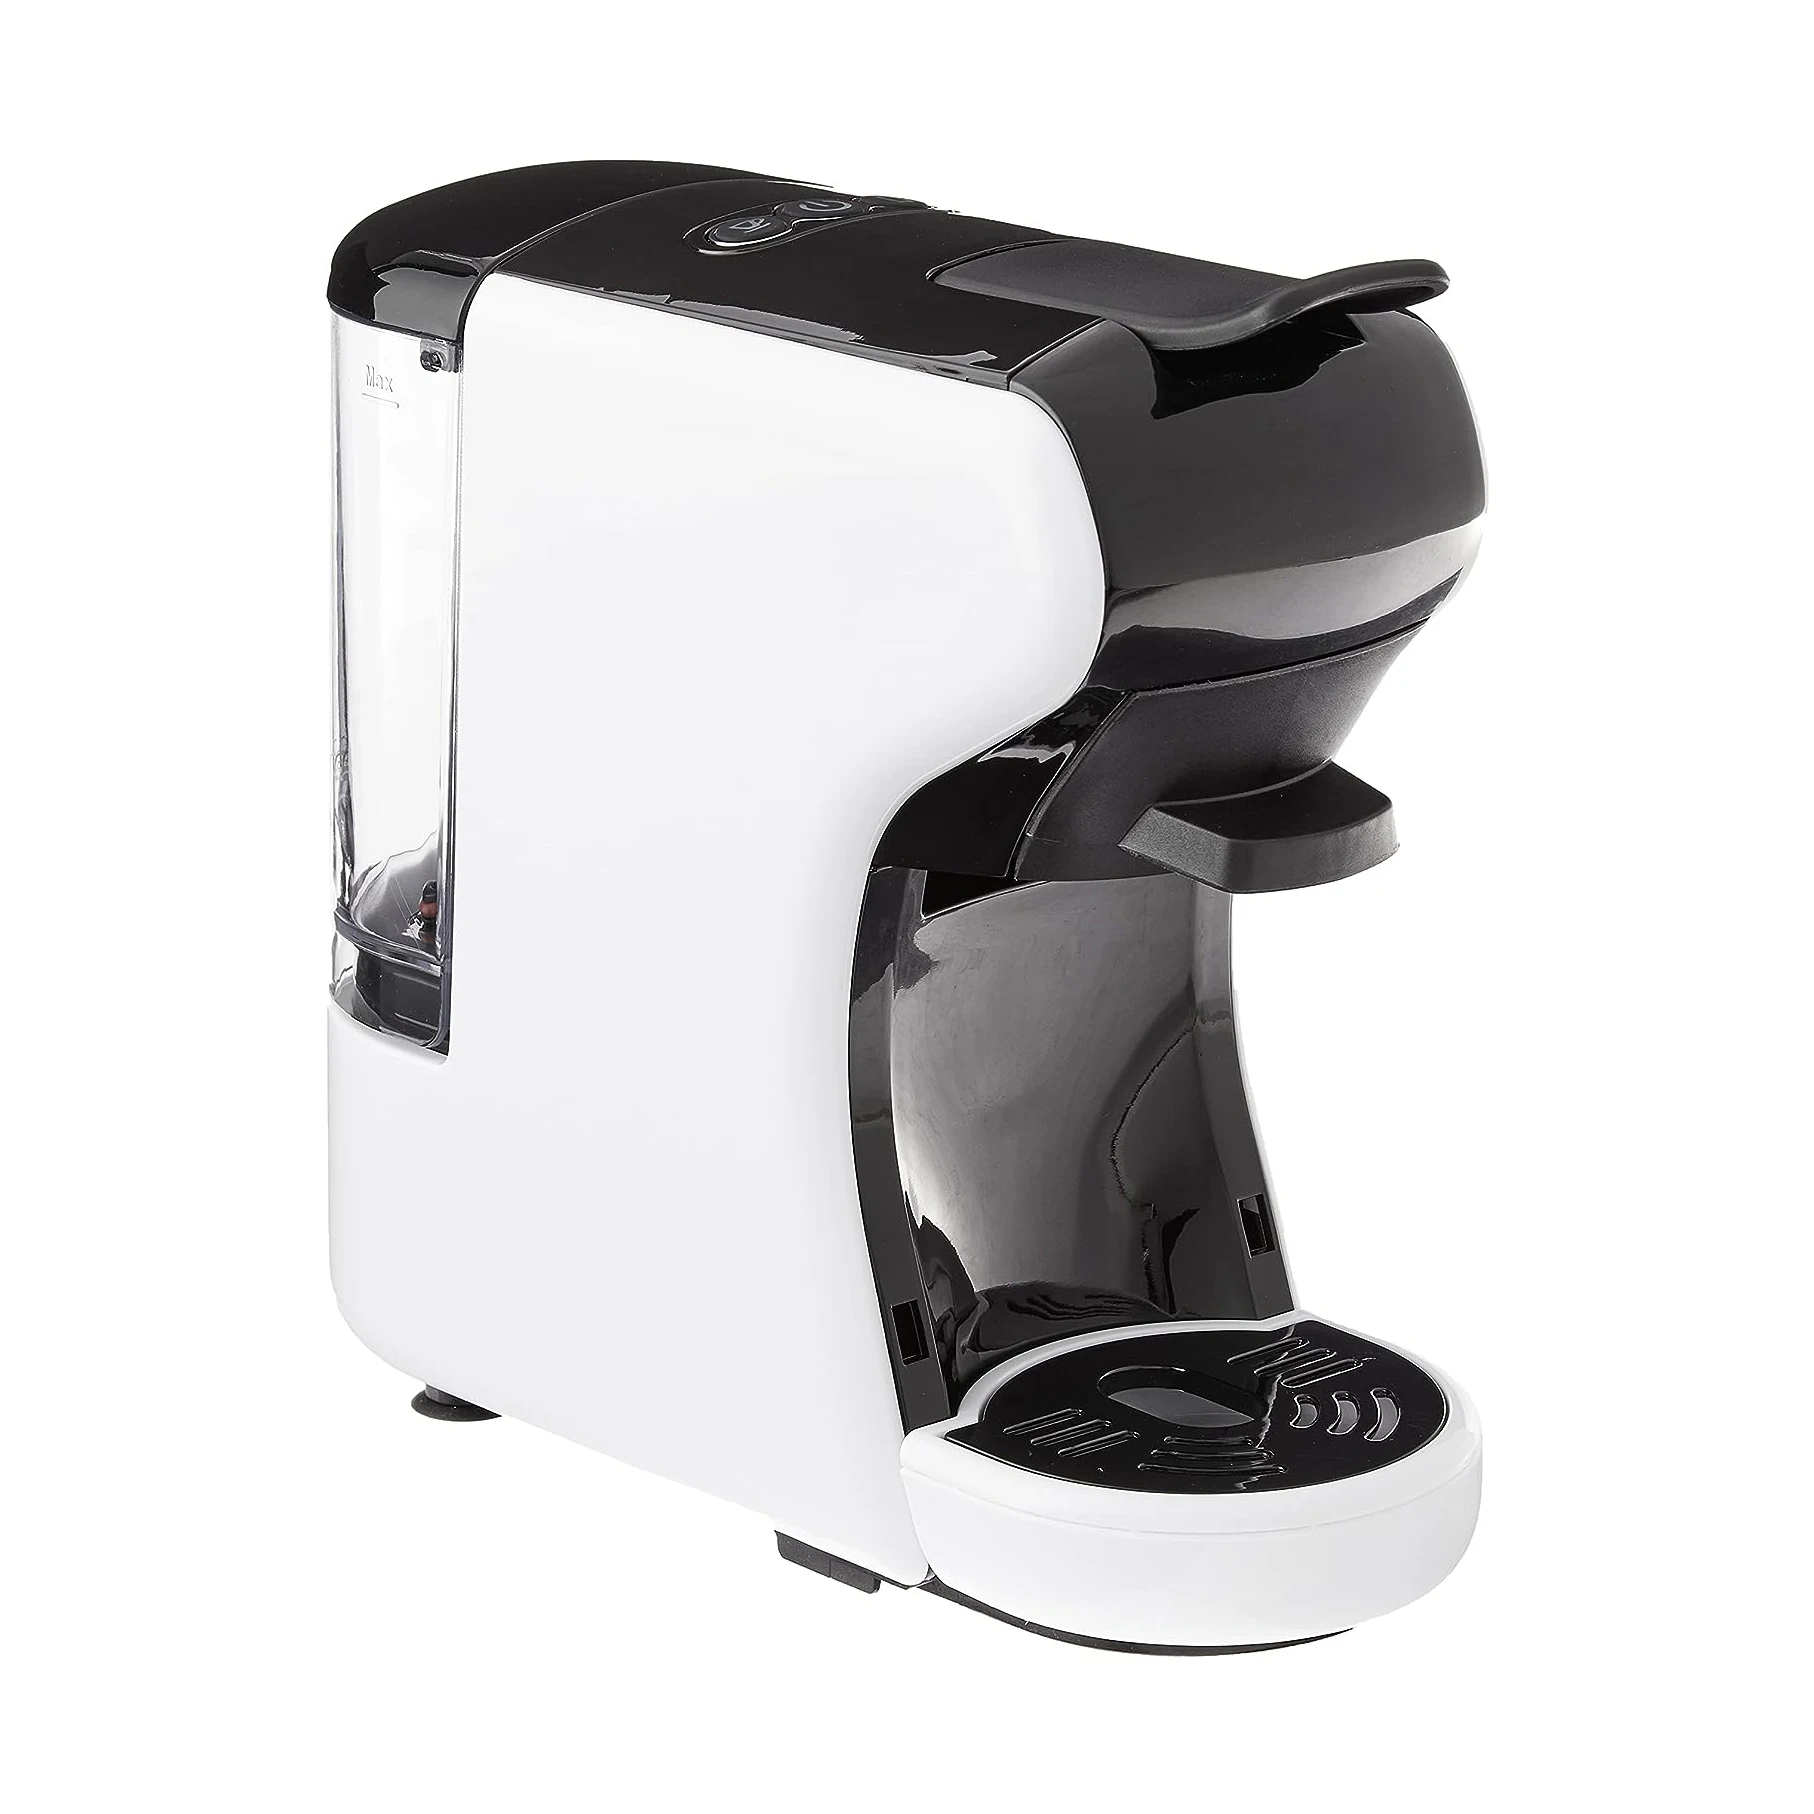 Lepresso Lieto 3 in 1 Multi Capsule Coffee Machine – Smart Avenue